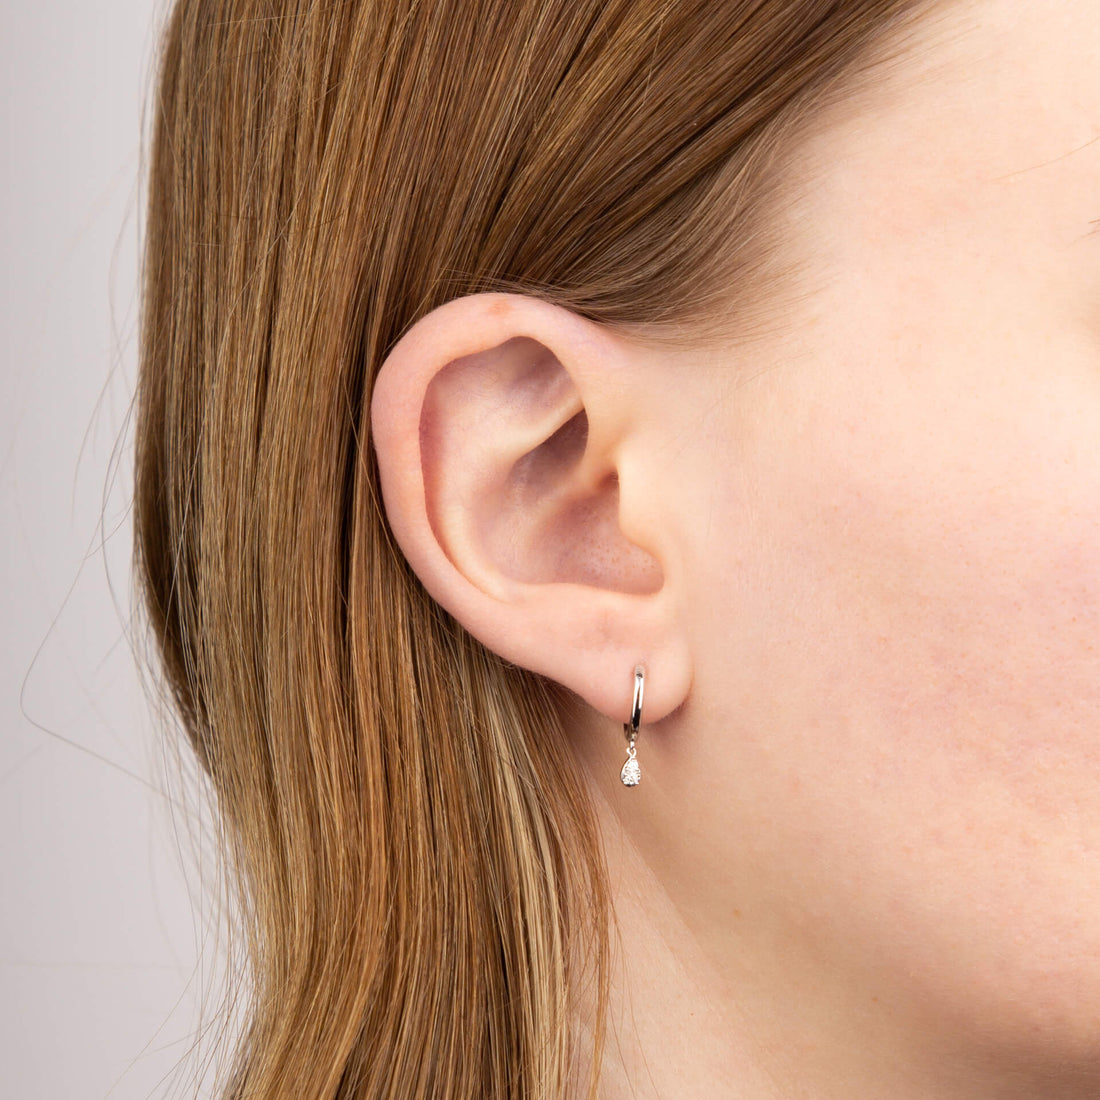 Hoop Earrings with Teardrop Diamond Drop in 9ct White Gold - Robert Anthony Jewellers, Edinburgh